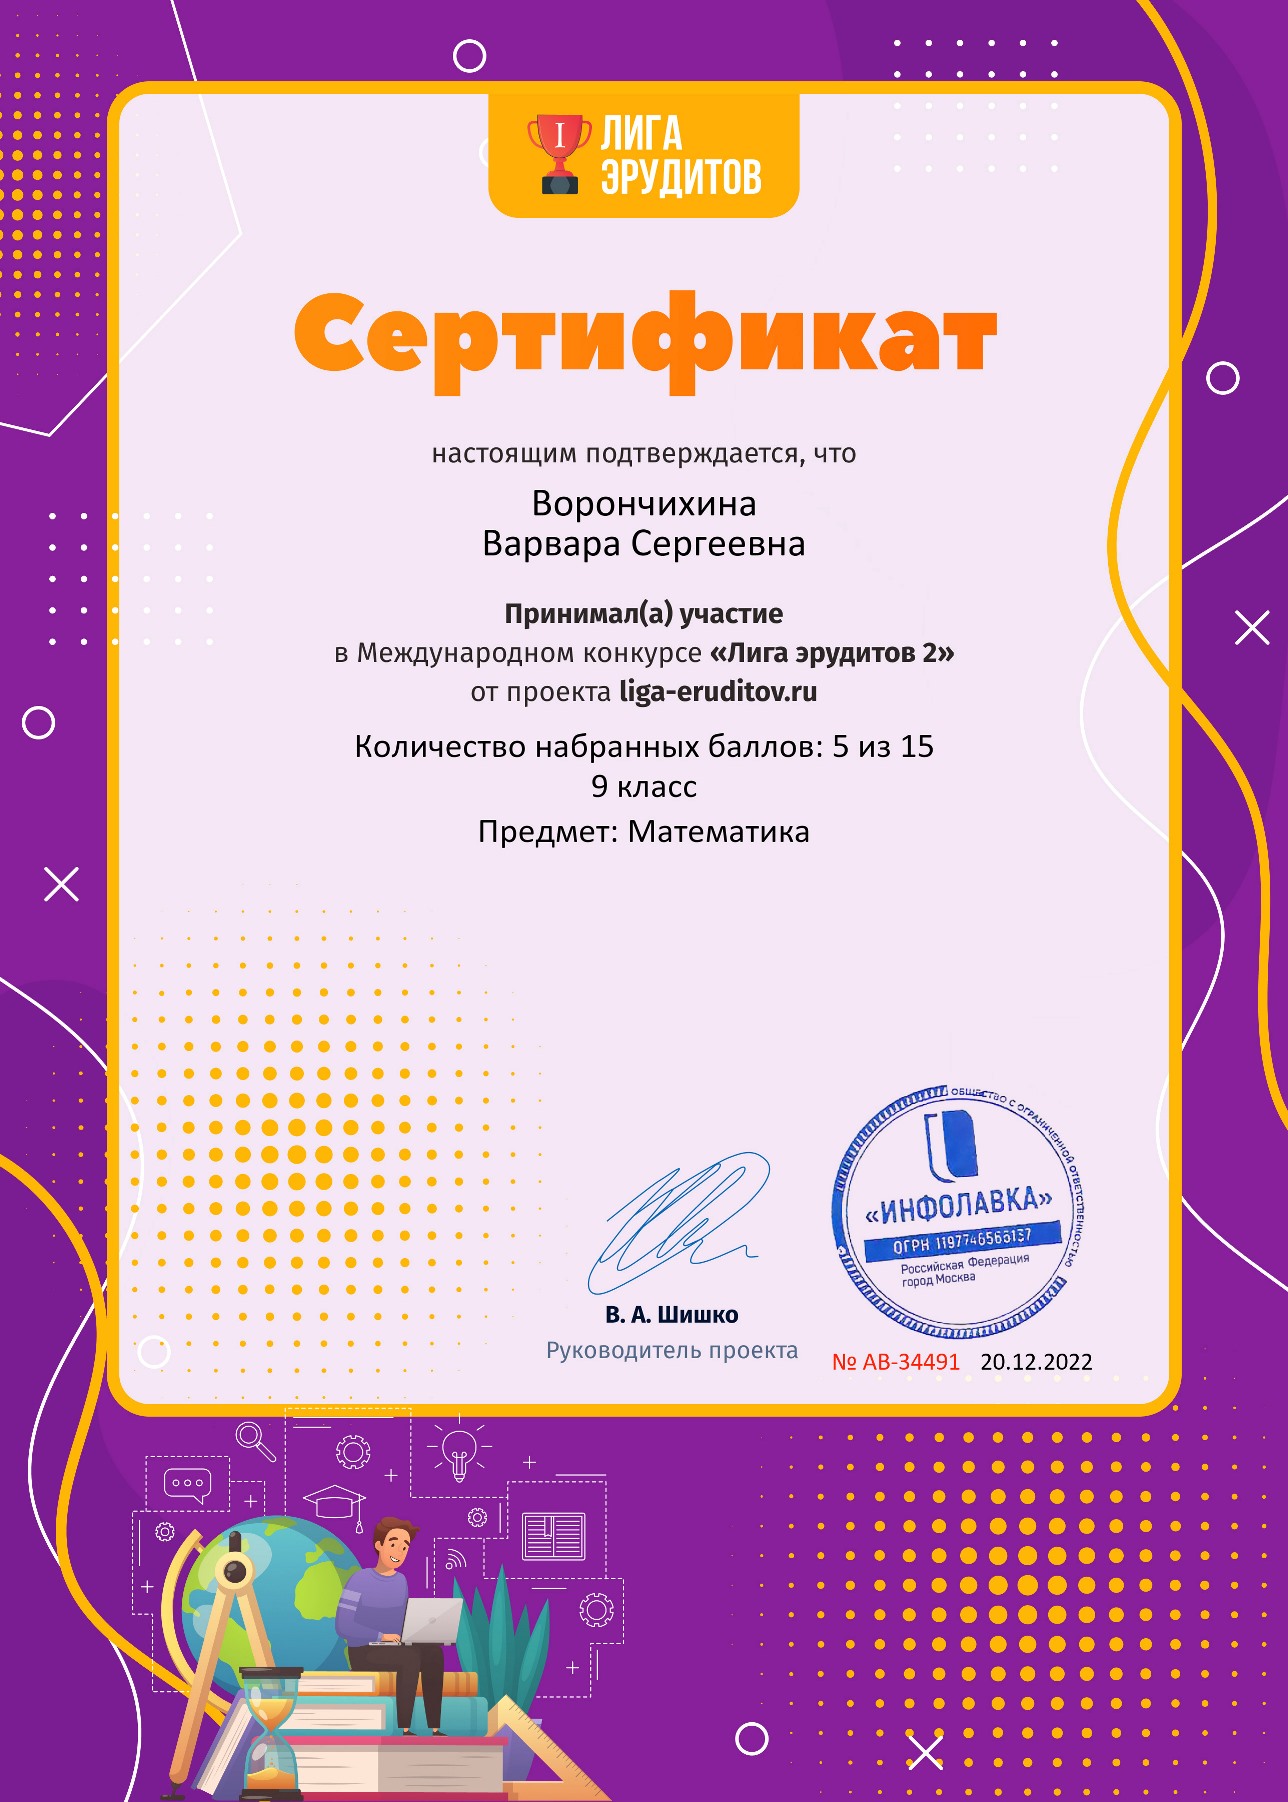 Ворончихина Варвара Сертификат проекта Лига Эрудитов №34491 2022 г.